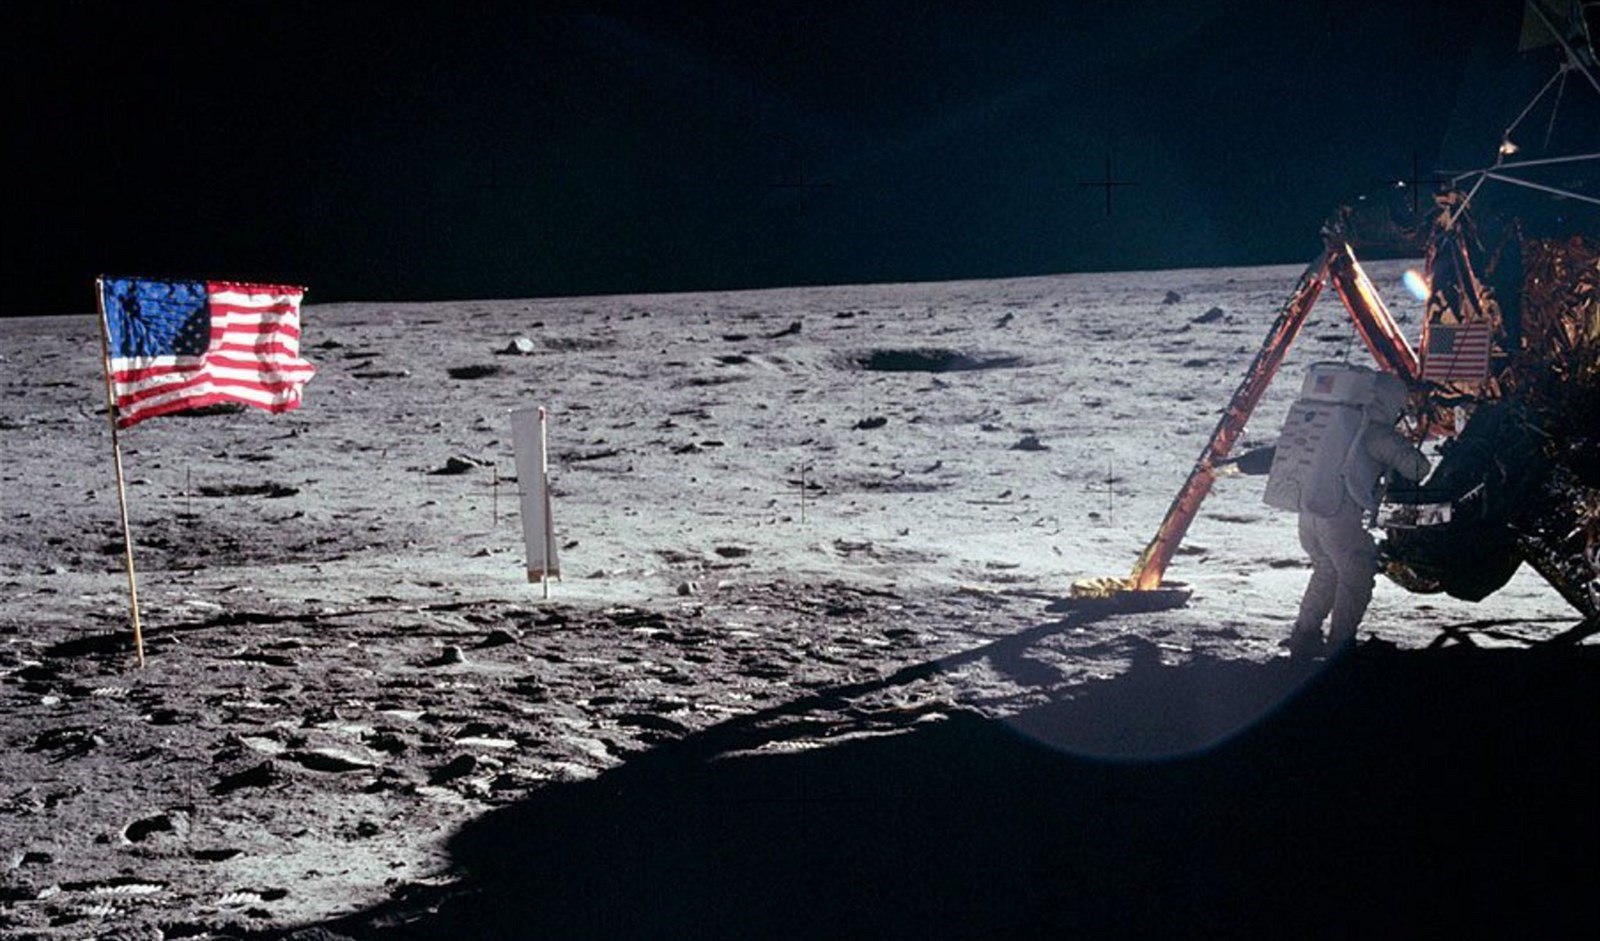 Keď Armstrong s Aldrinom odlietali z Mesiaca, štart spôsobil pád americkej vlajky. Ešte než sa tak stalo, stihol Armstrong vlajku vyfotiť. Aldrin neskôr uviedol, že videl, ako vlajku zrazili výfukové plyny z motorov Apolla 11. Účastníci ďalších misií Apollo radšej zasadili vlajku oveľa ďalej od pristávacieho modulu.